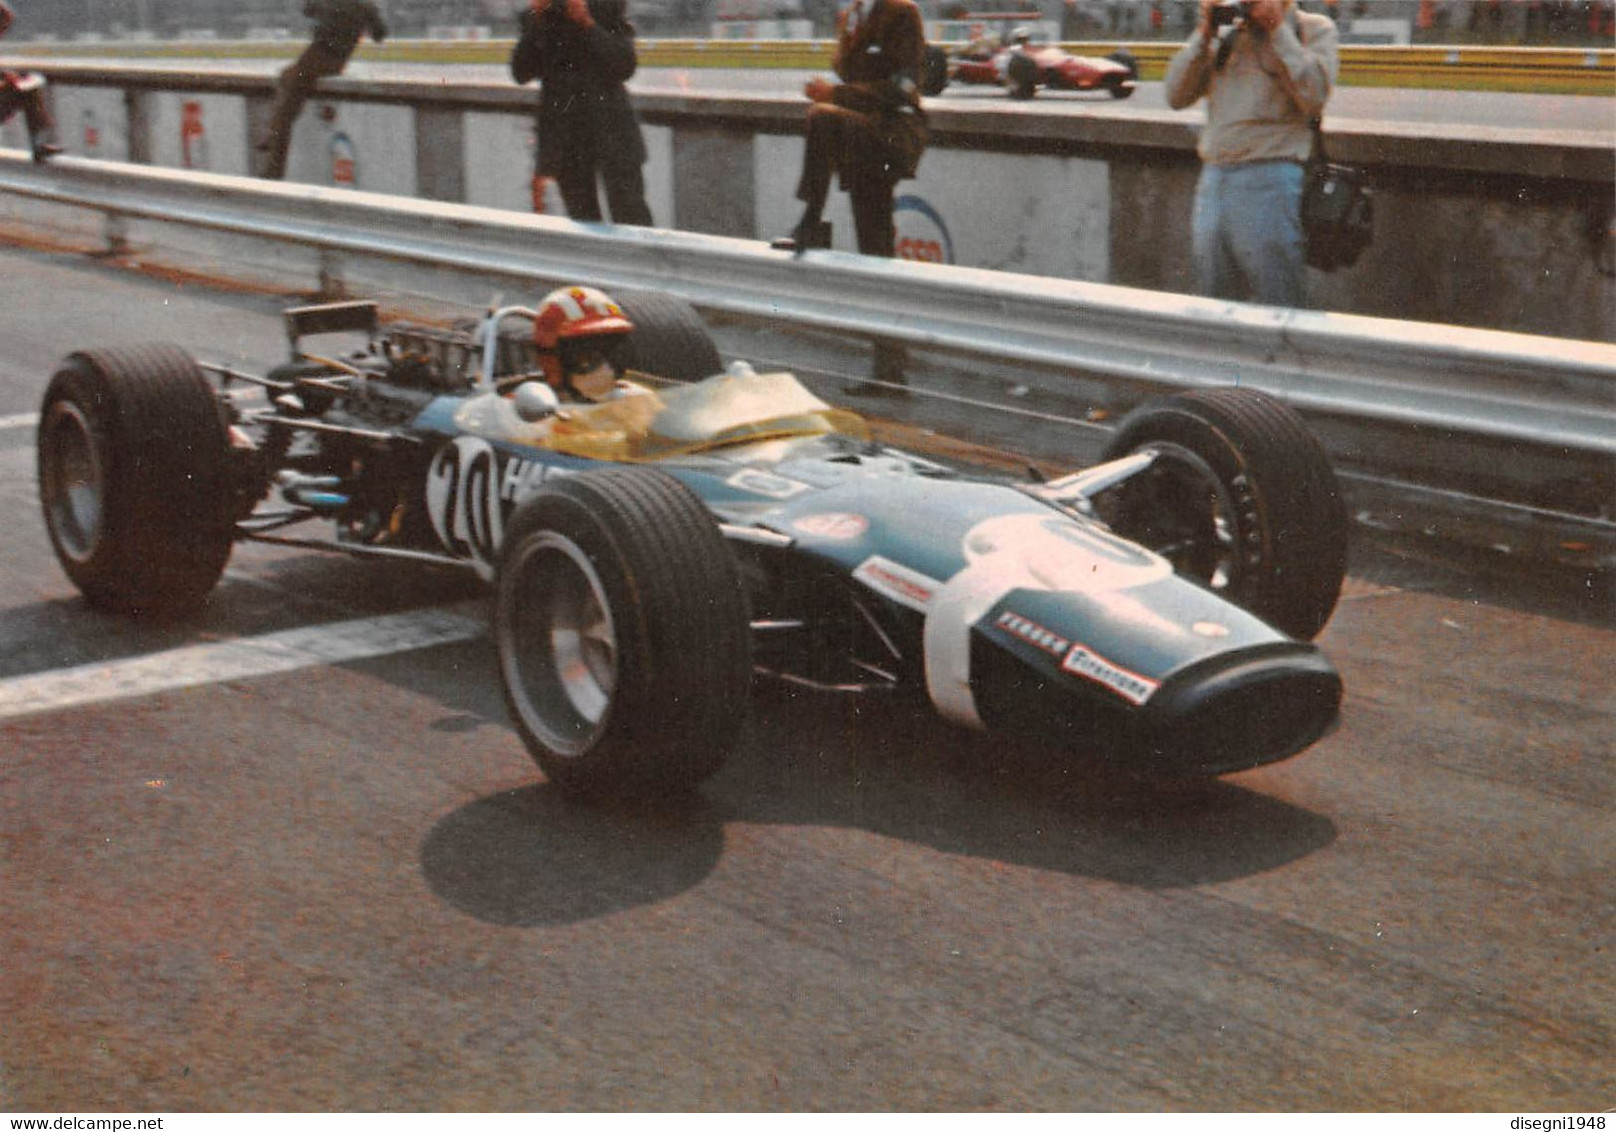 011001 "JOSEPH SIFFERT - LOTUS FORD F. 1 1968 - GRAN PREMIO D'ITALIA 1968 - MONZA" CARTOLINA  ORIG. NON SPED. - Autosport - F1